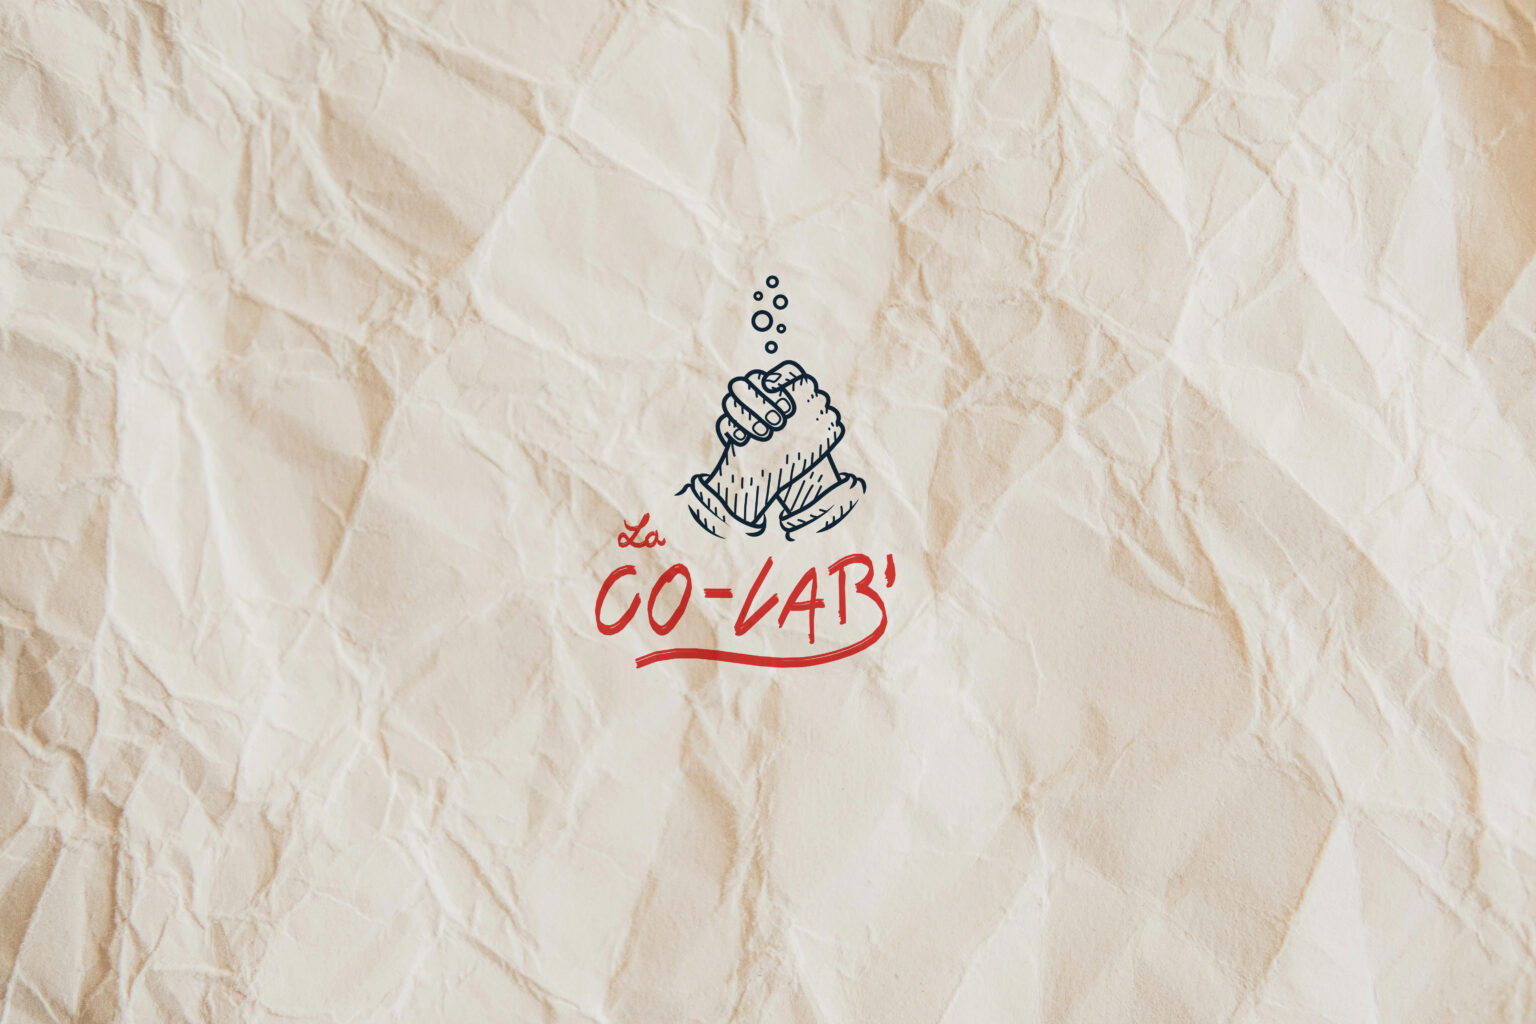 identité visuelle de marque La Co-lab' sur papier, par l'équipe de l'agence Pantel